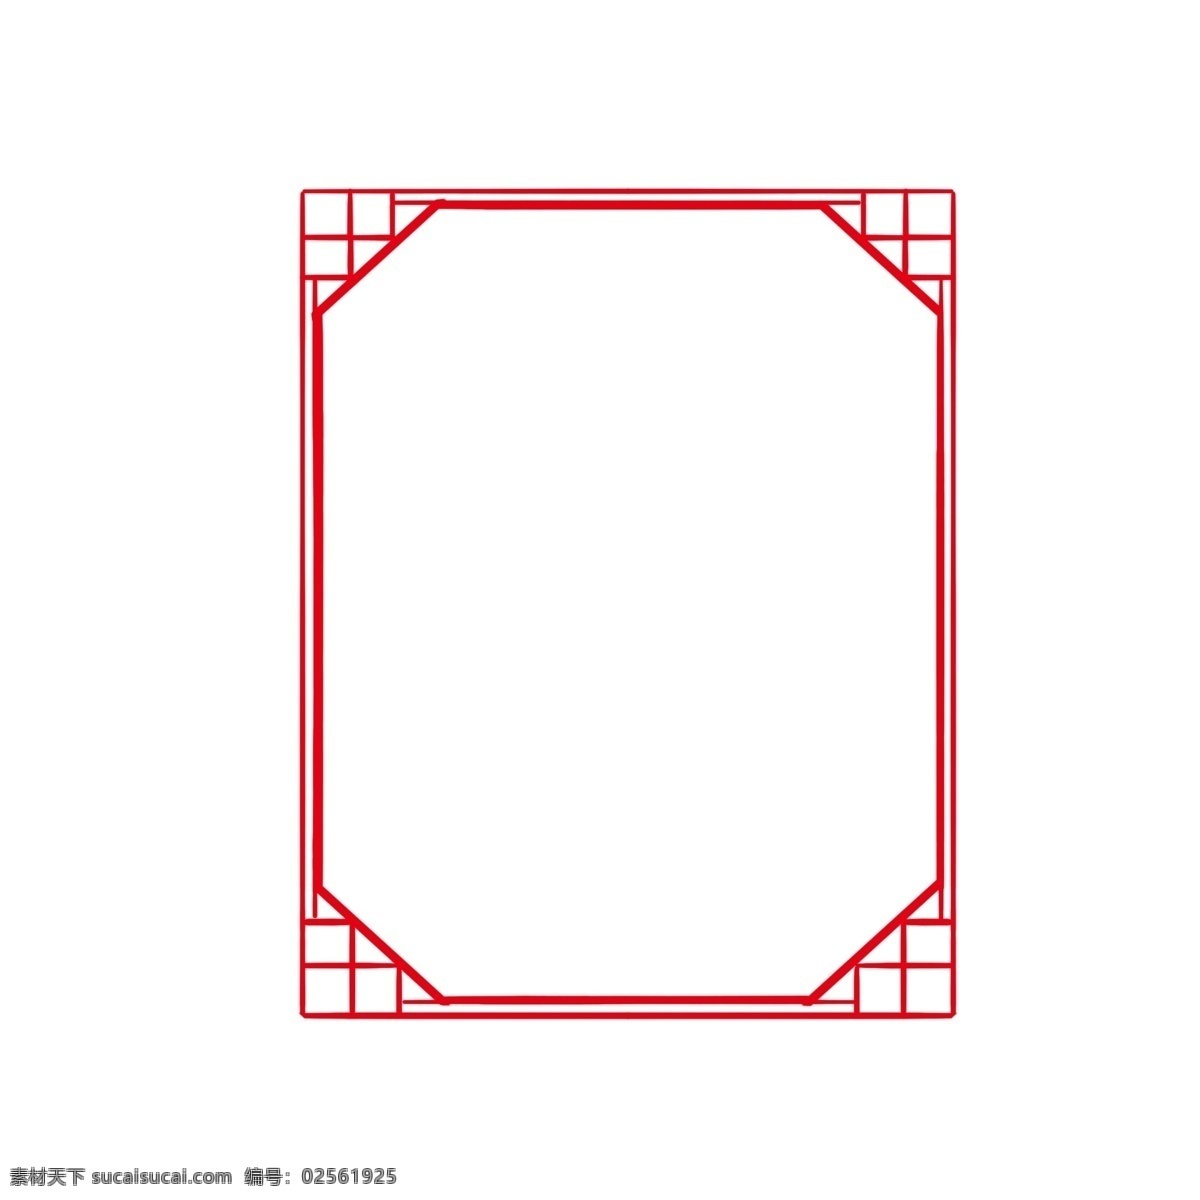 红色 传统 复古 边框 装饰 古典 简约 新中式 长方形 正方形 复古色 边框红色